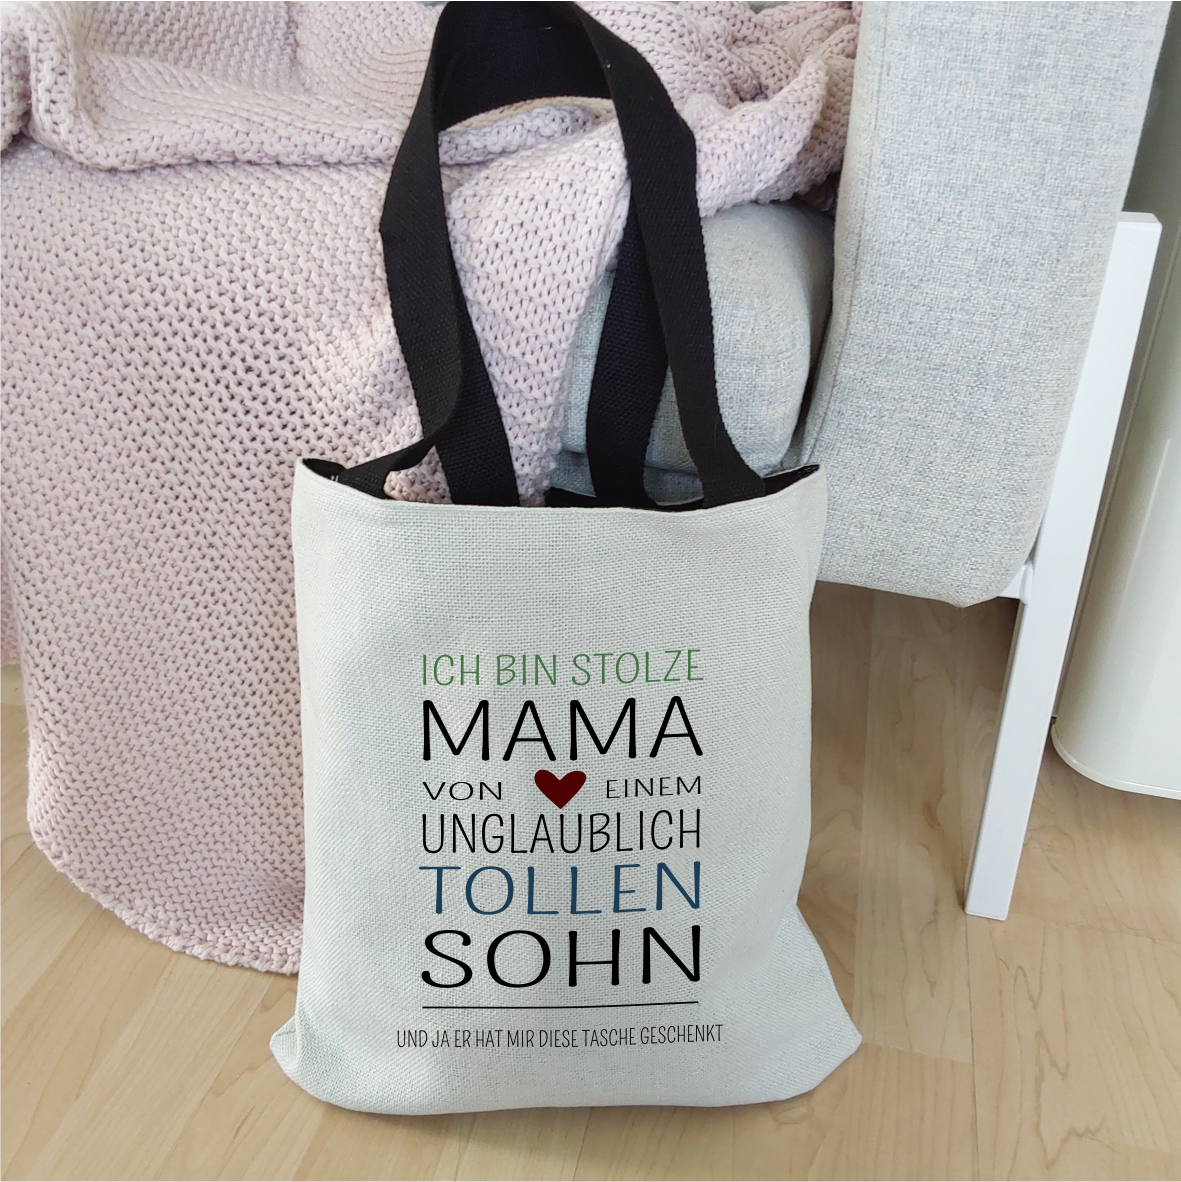 Einkaufstasche "Ich bin stolze Mama von einem unglaublich tollen Sohn..."